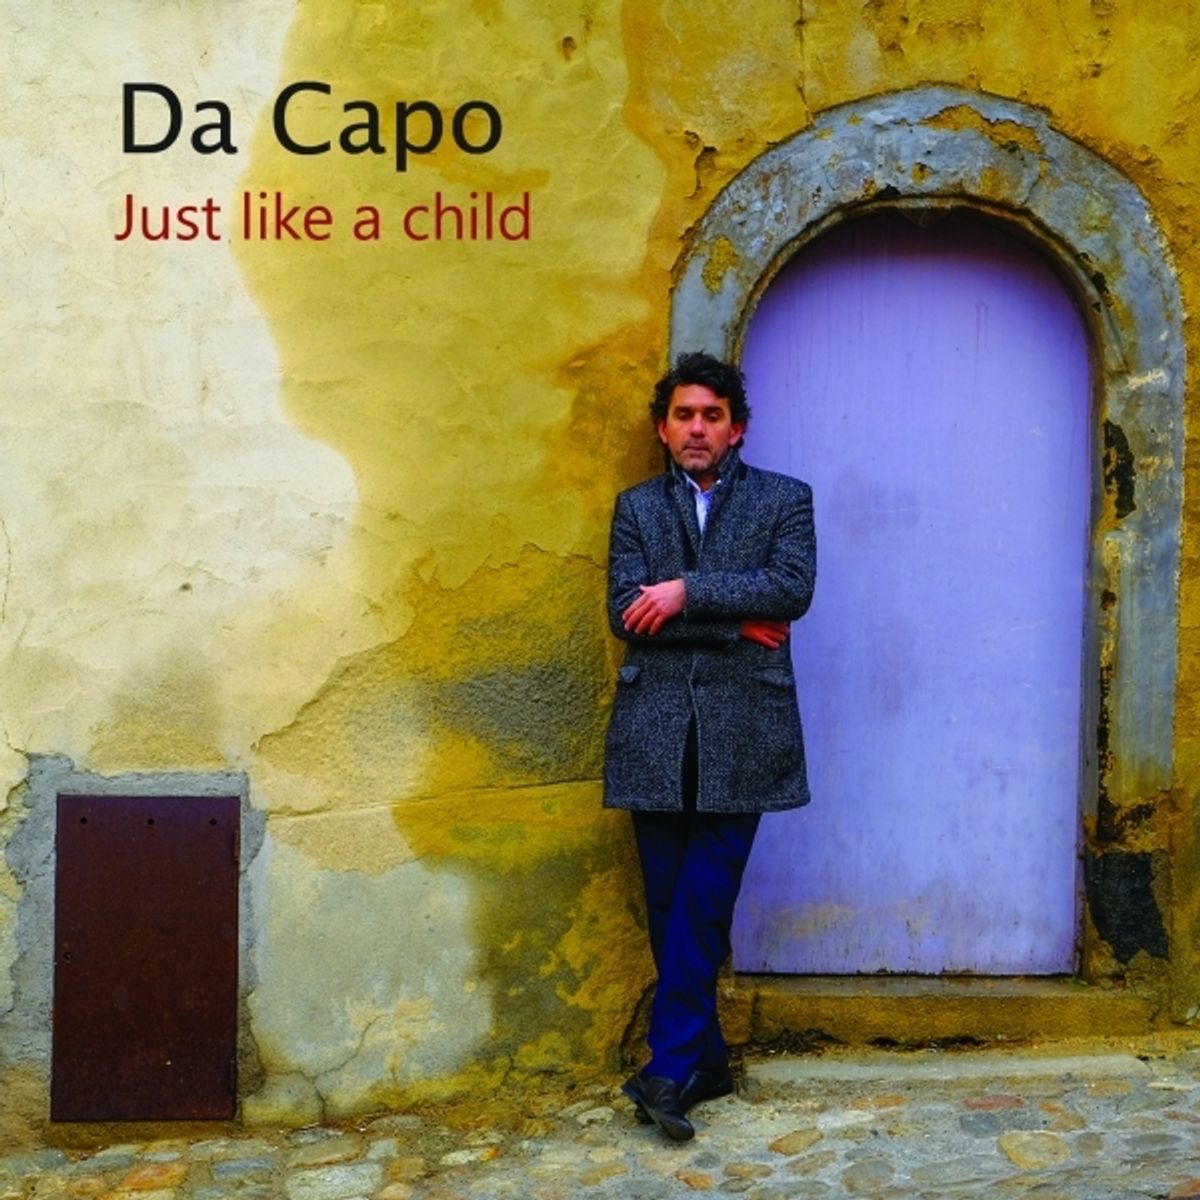 Da Capo - Just like a child